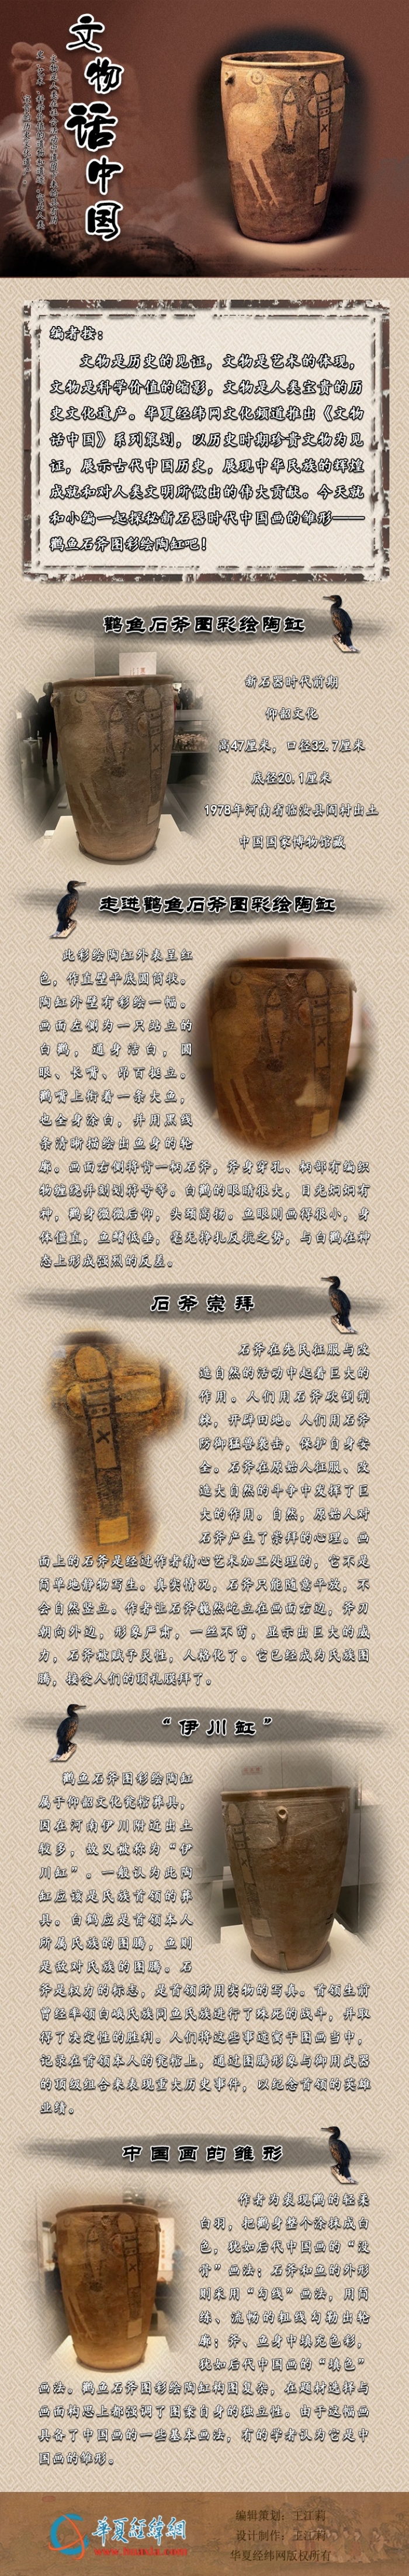 文物话中国——鹳鱼石斧图彩绘陶缸